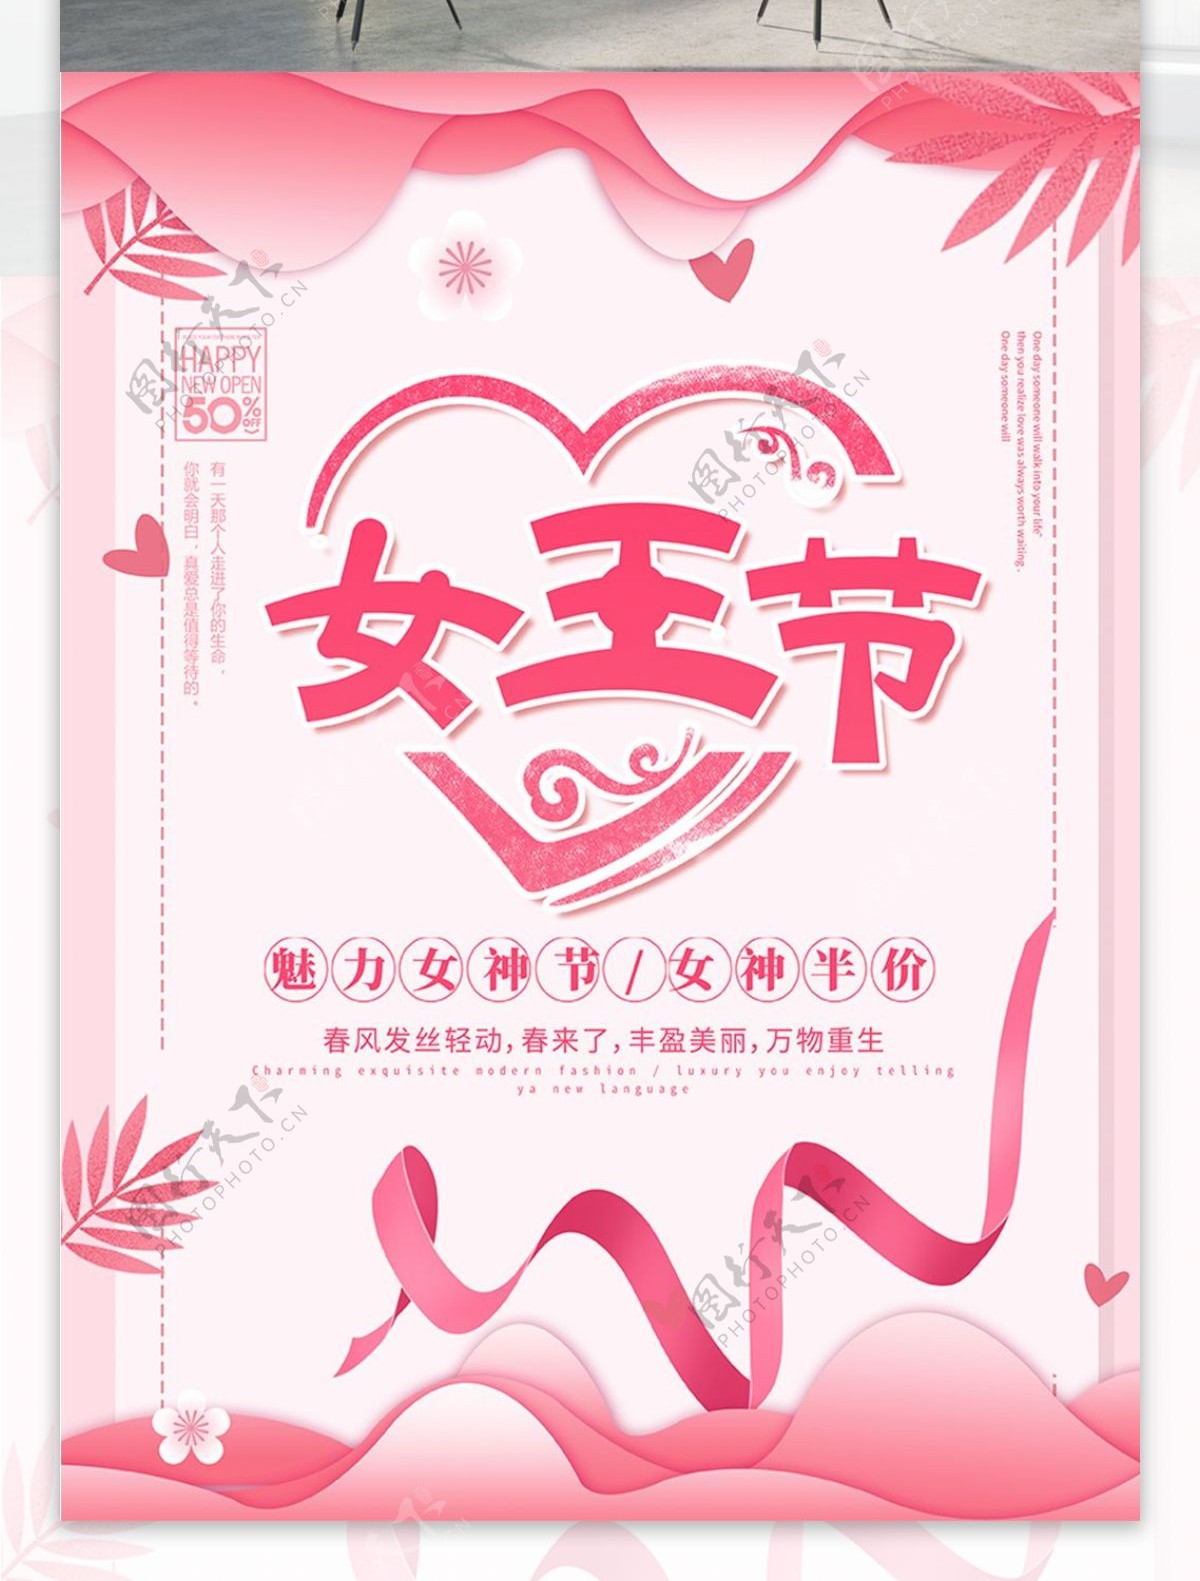 38妇女节节日宣传海报